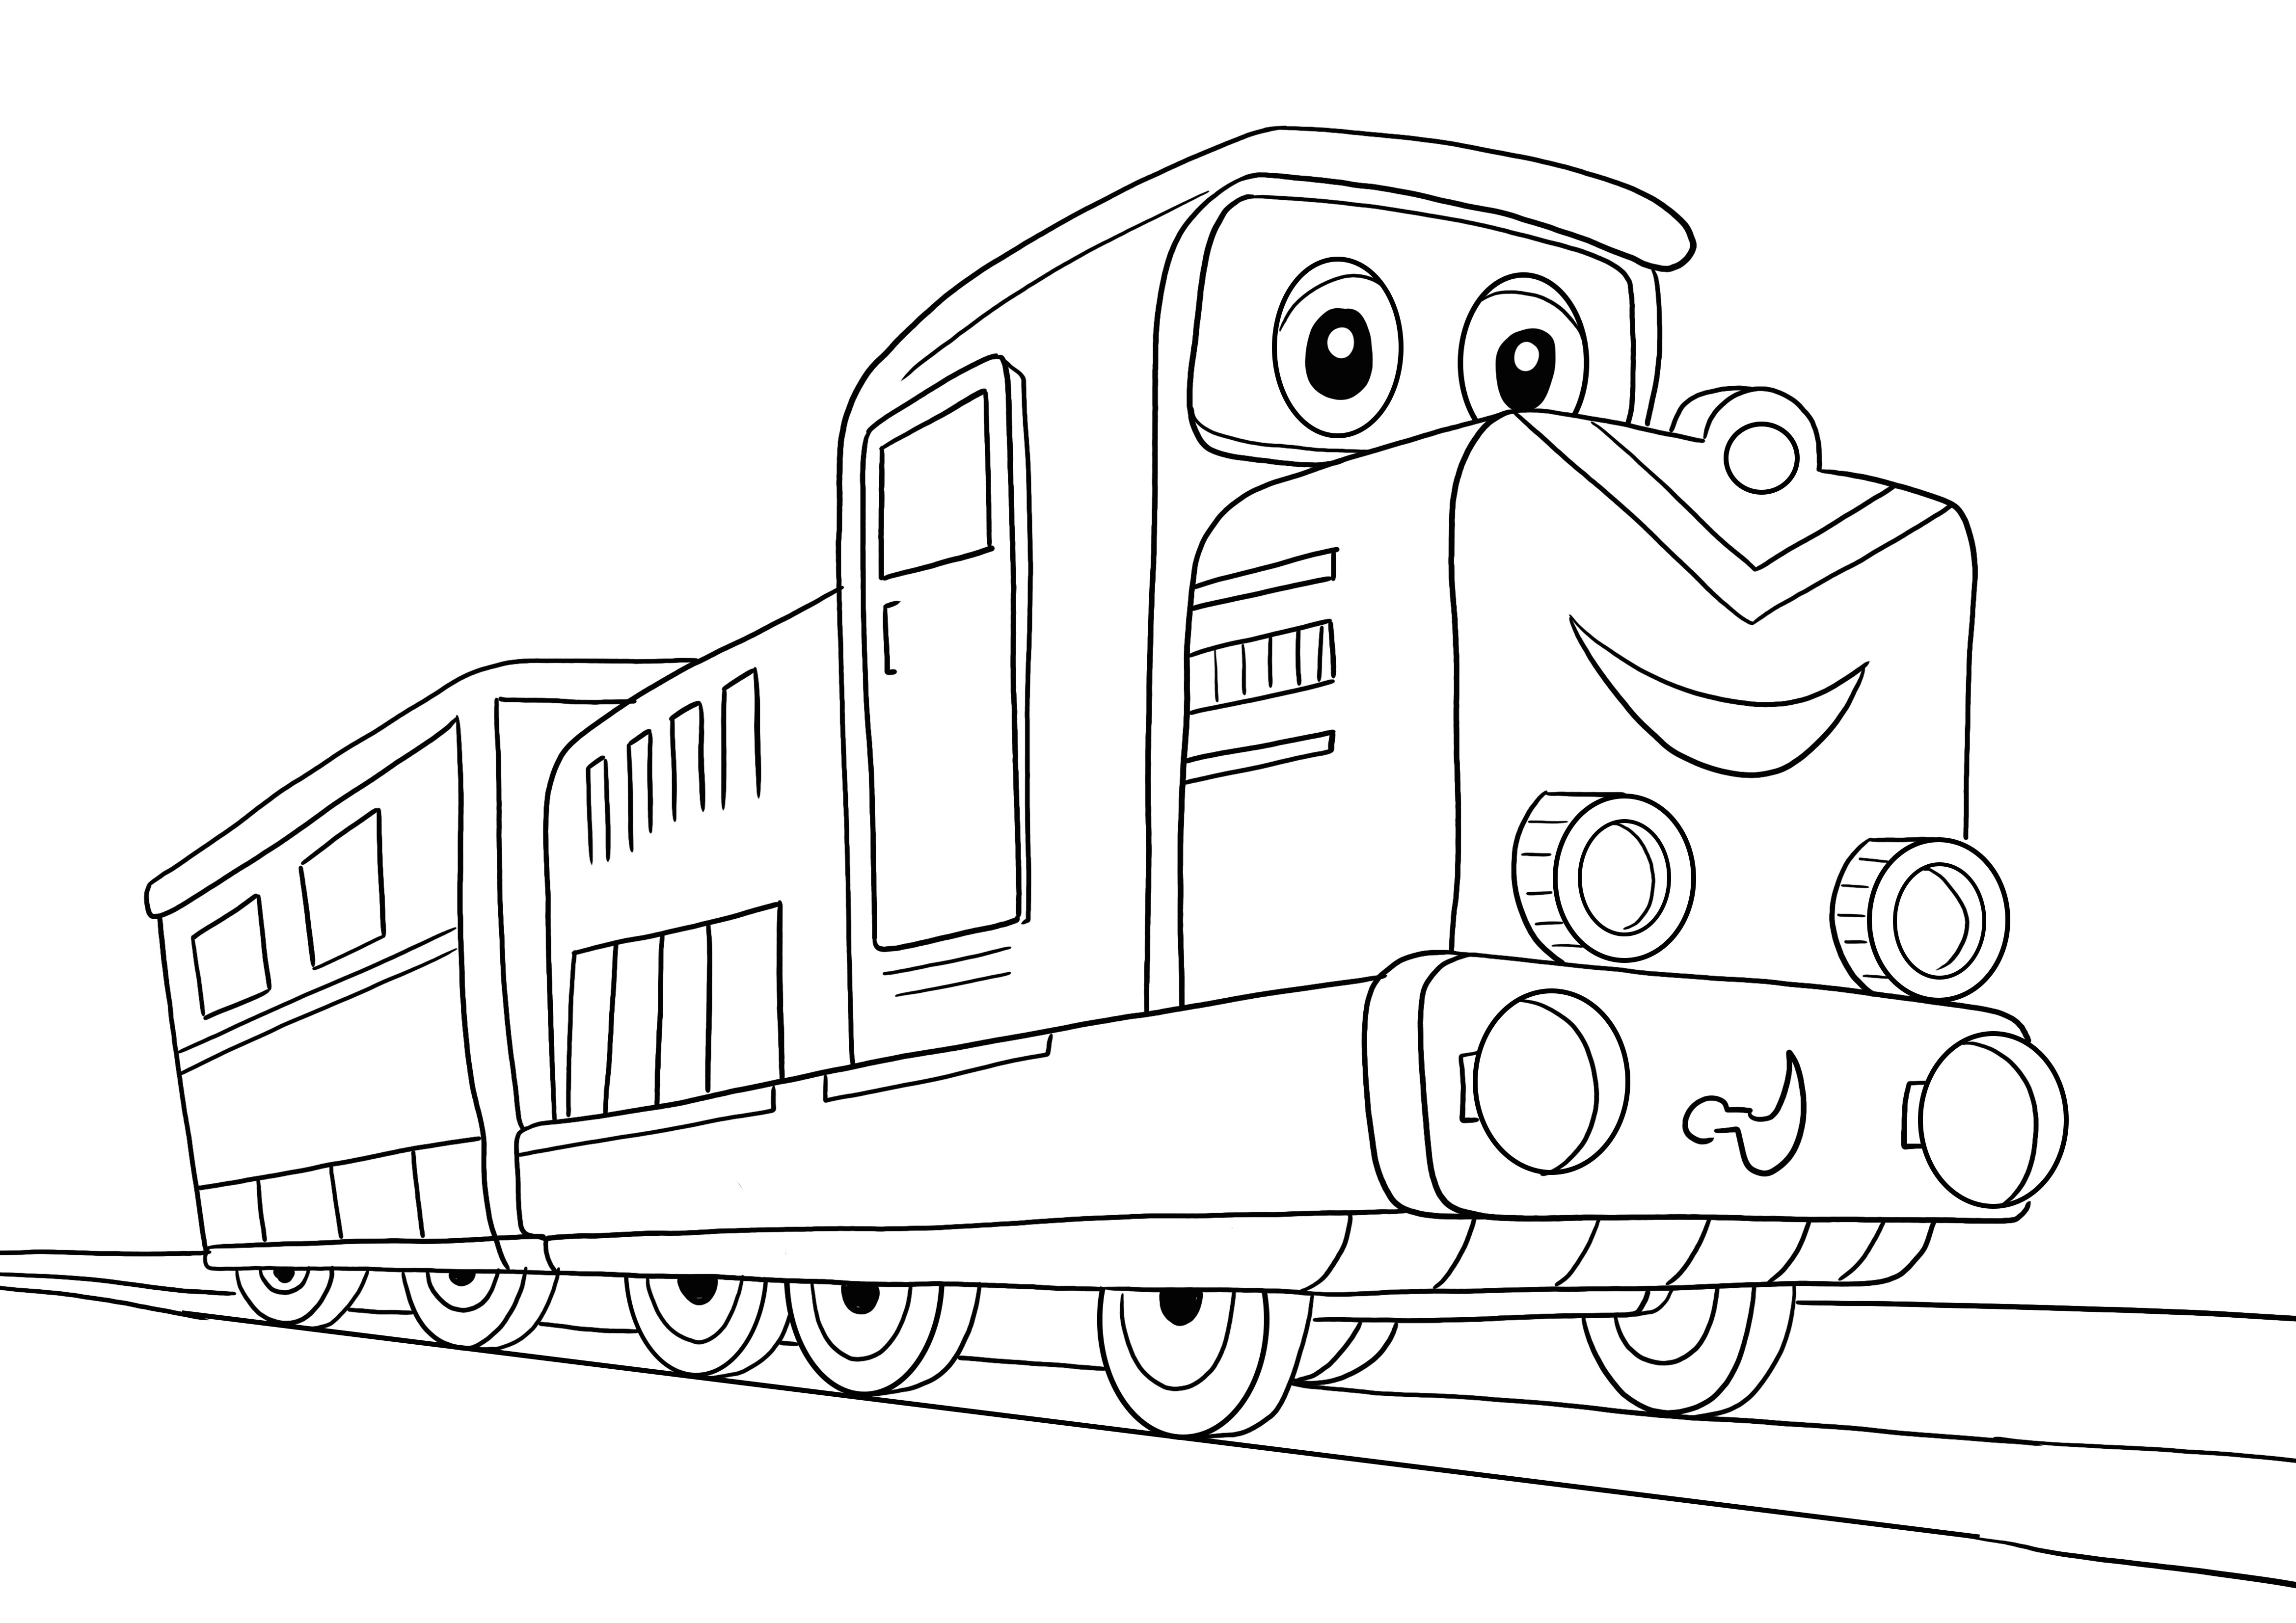 Hier is onze Cartoon trein kleurplaat voor kinderen om met plezier te leren kleurplaat